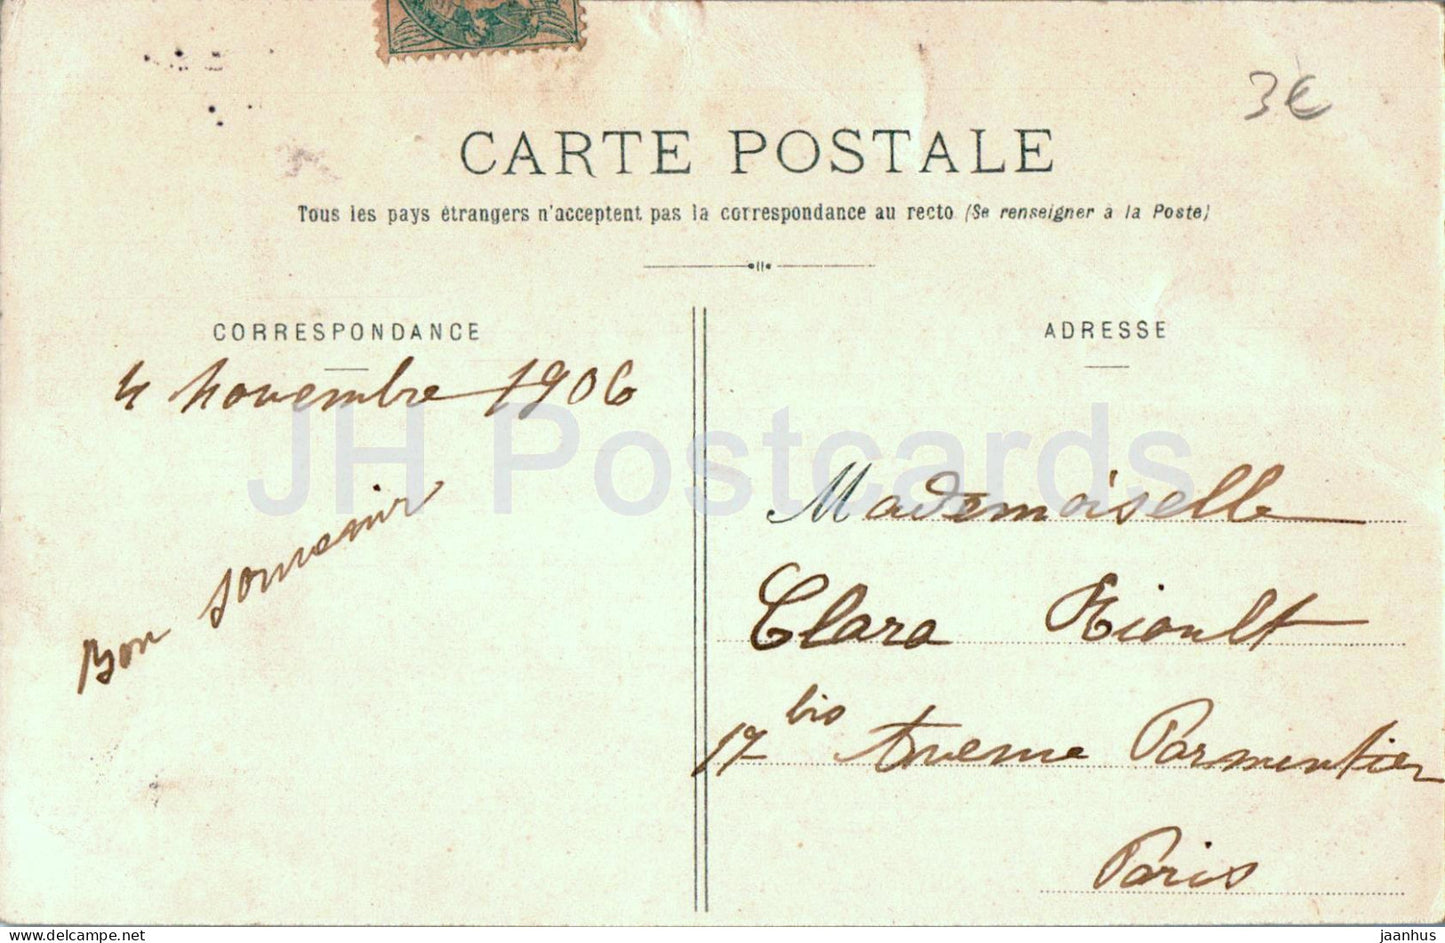 Ferrieres - Vieux Pont du XV siecle appele Gril de Corbelin - pont - carte postale ancienne - 1906 - France - utilisé 